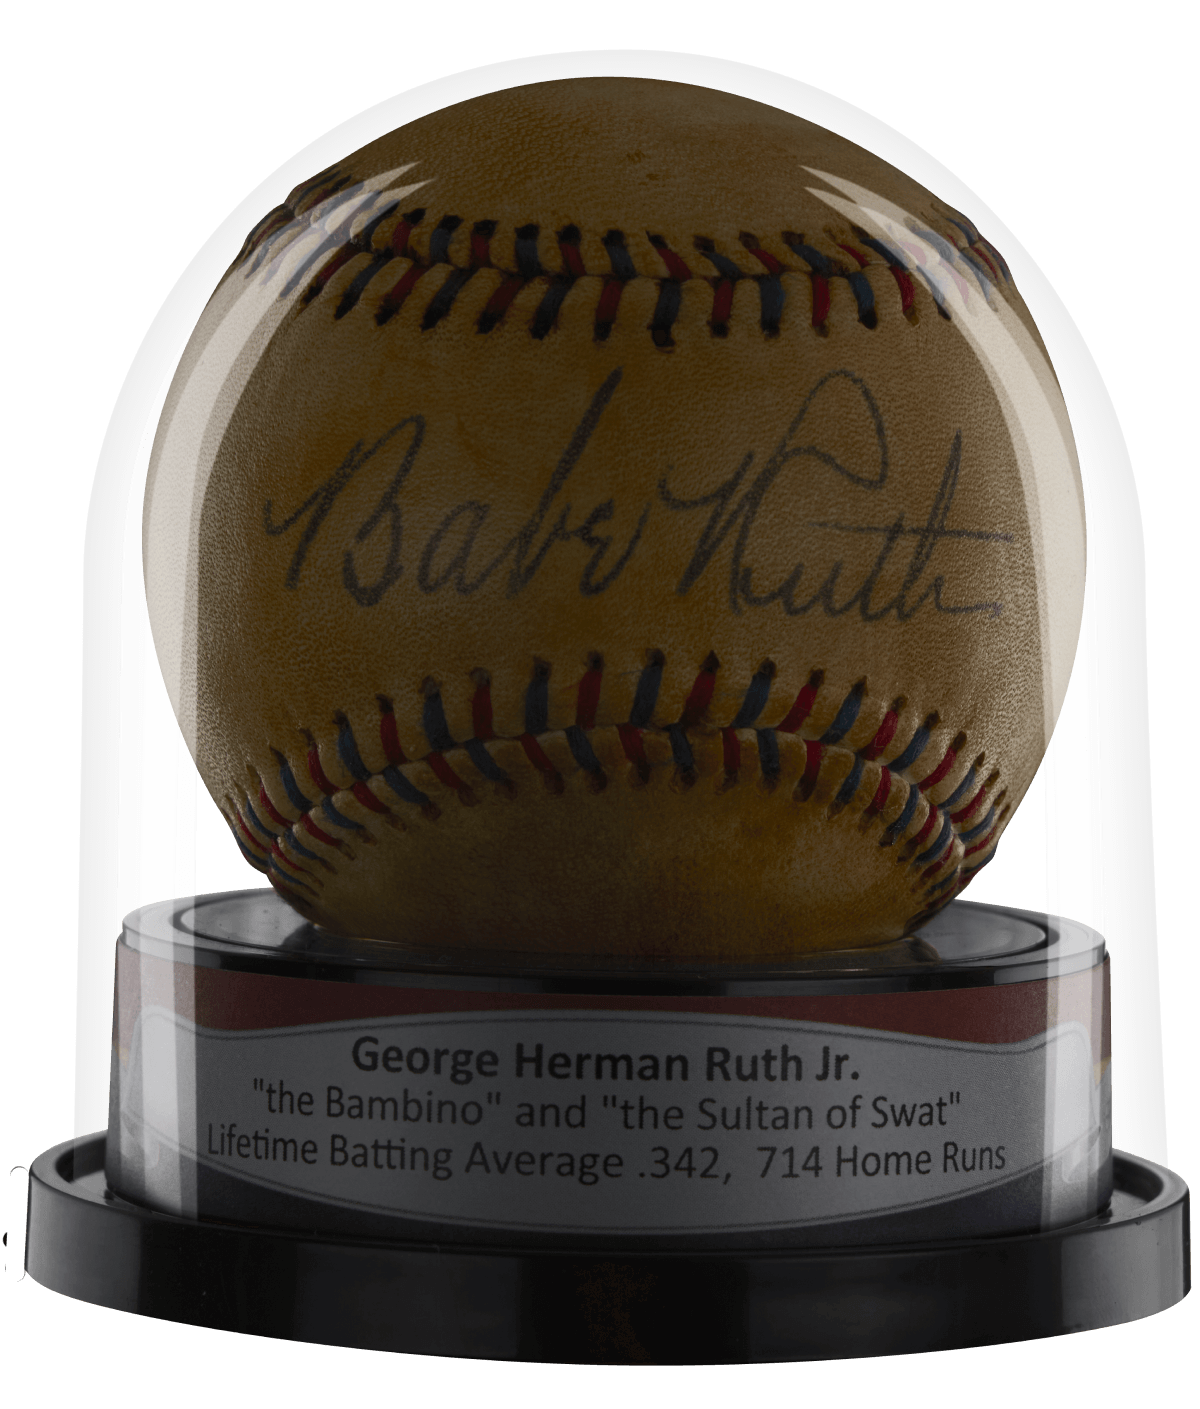 Balldome Babe Ruth autographed ball